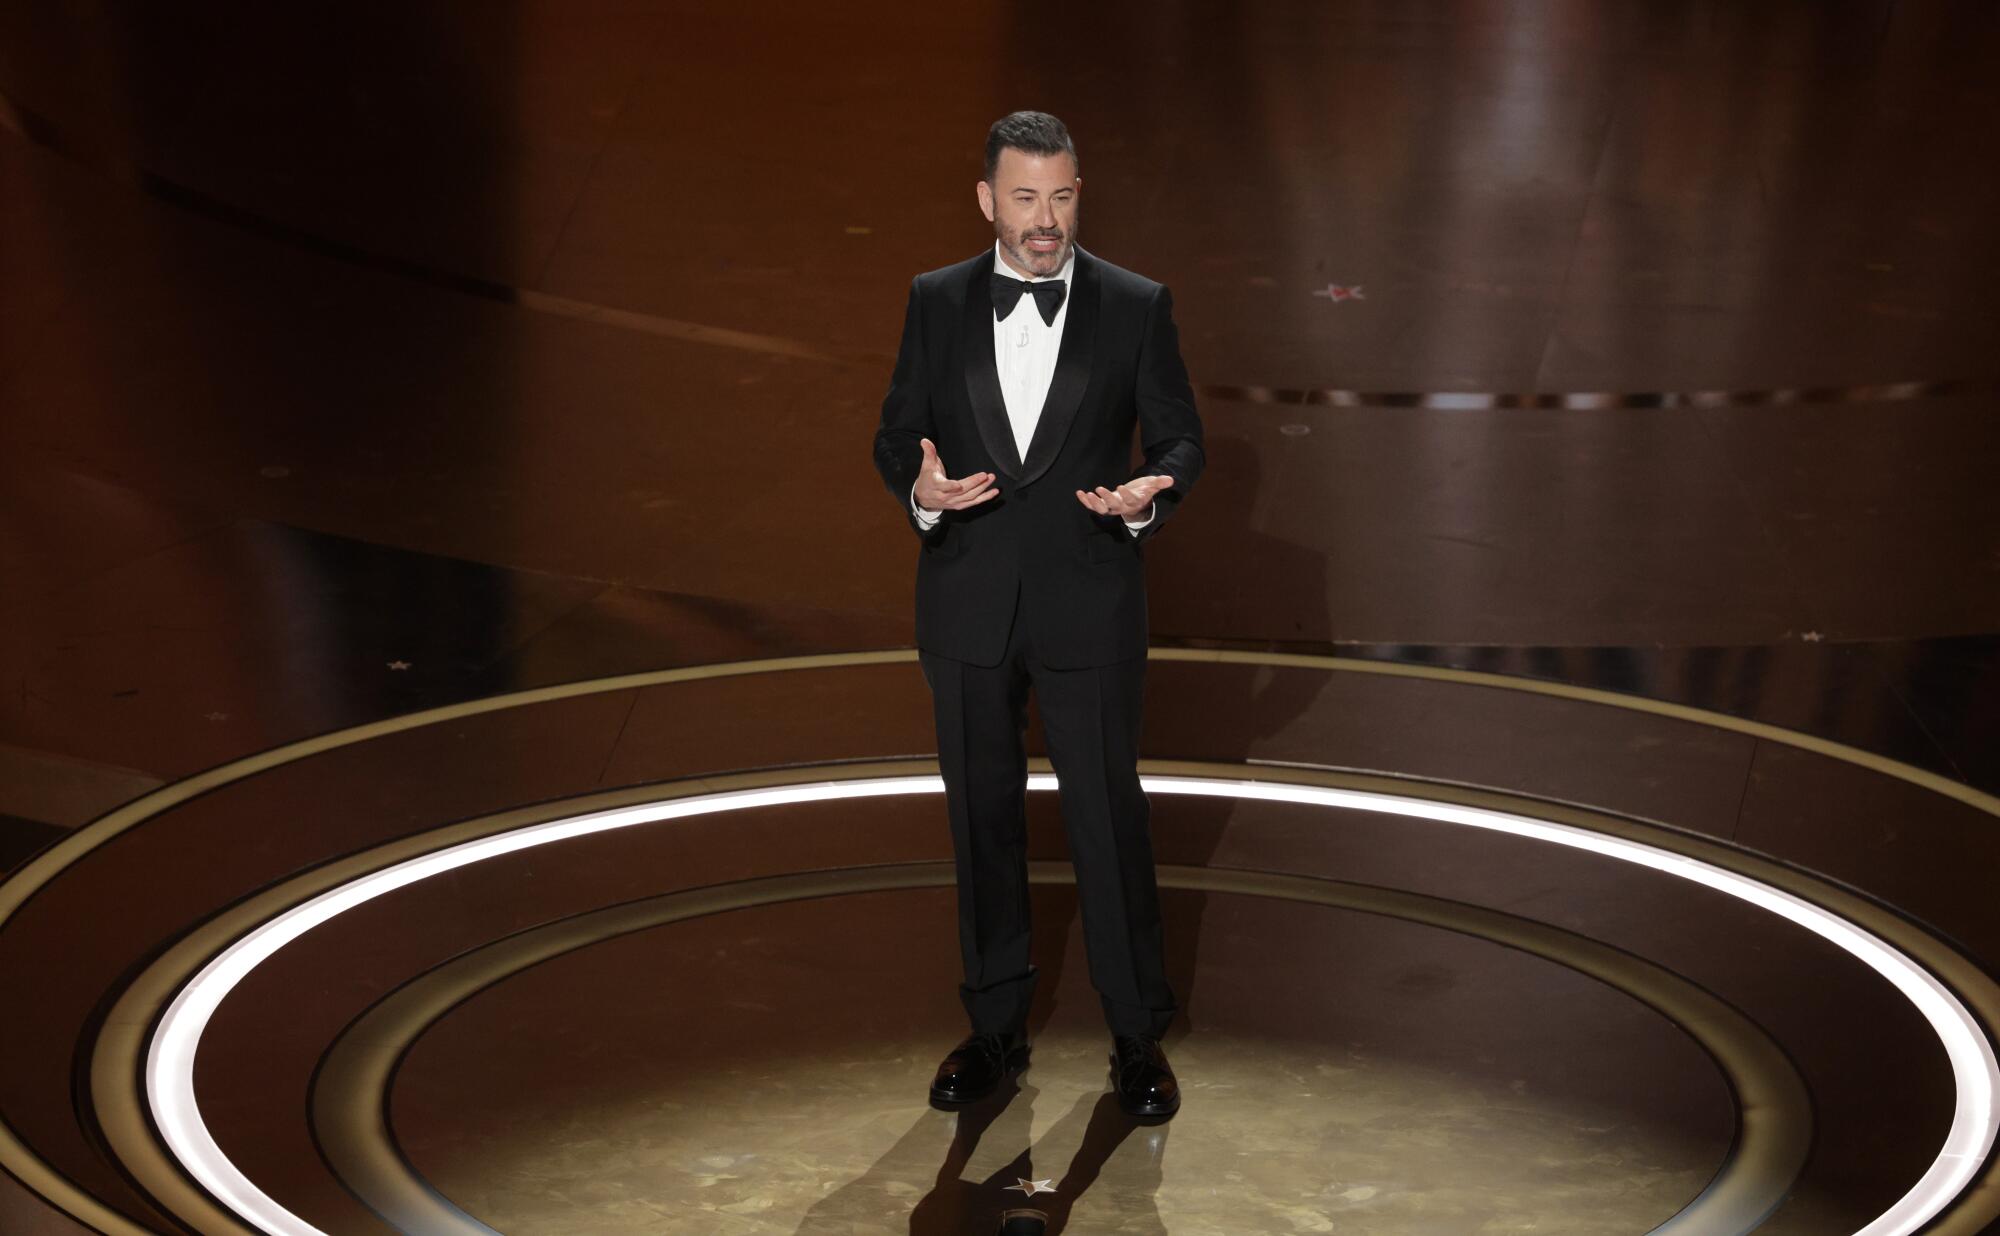 Jimmy Kimmel onstage in a black tuxedo.